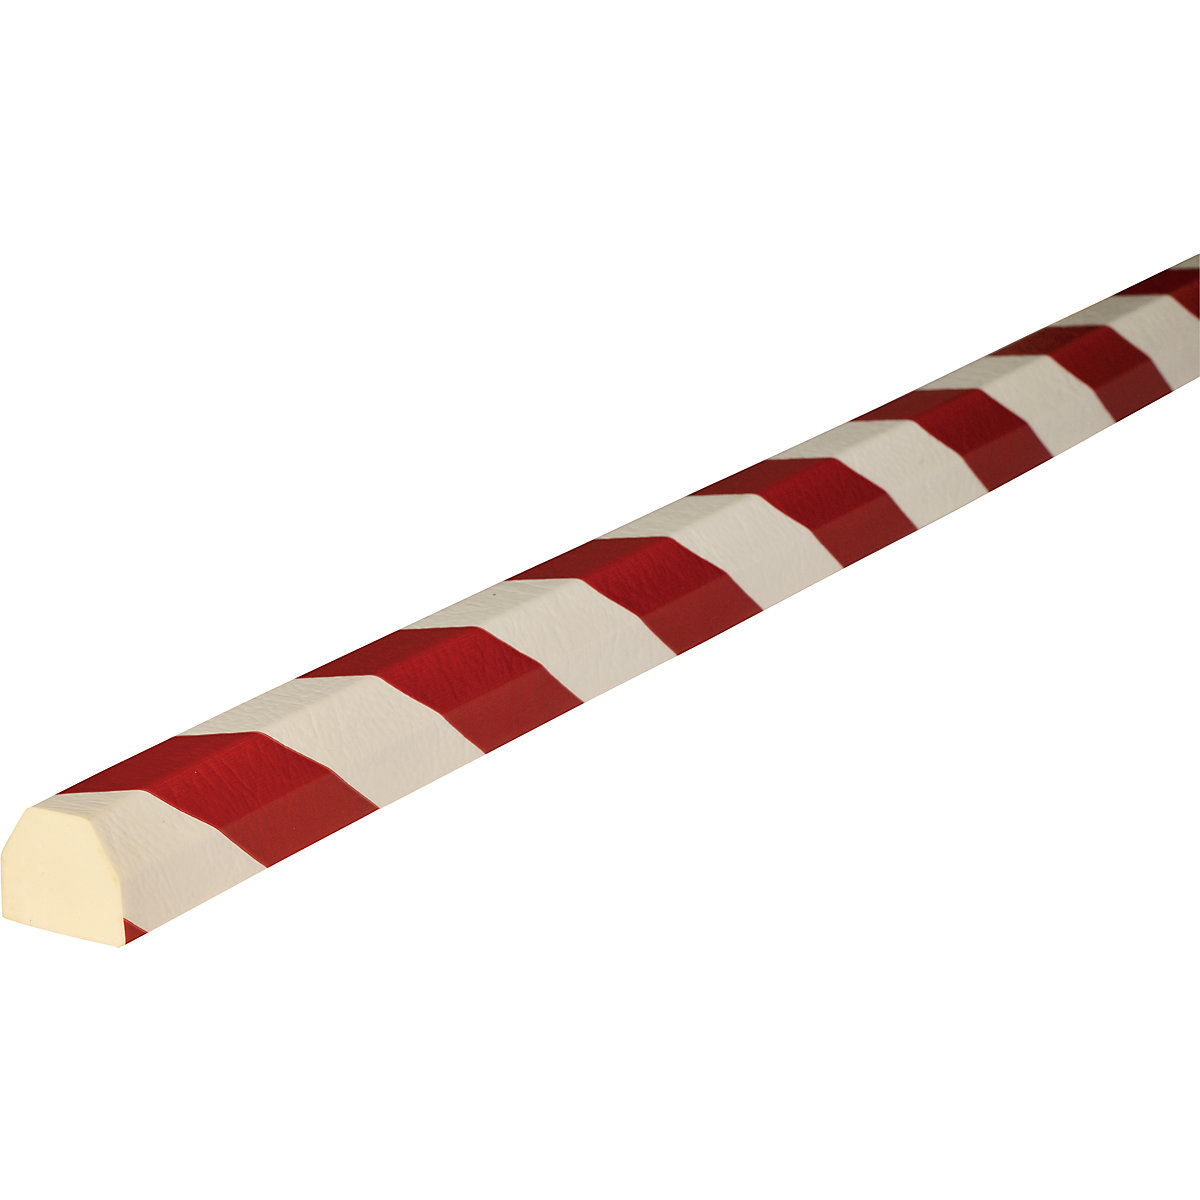 Protección de superficies Knuffi® – SHG, tipo CC, 1 rollo de 5 m, en rojo y blanco-22